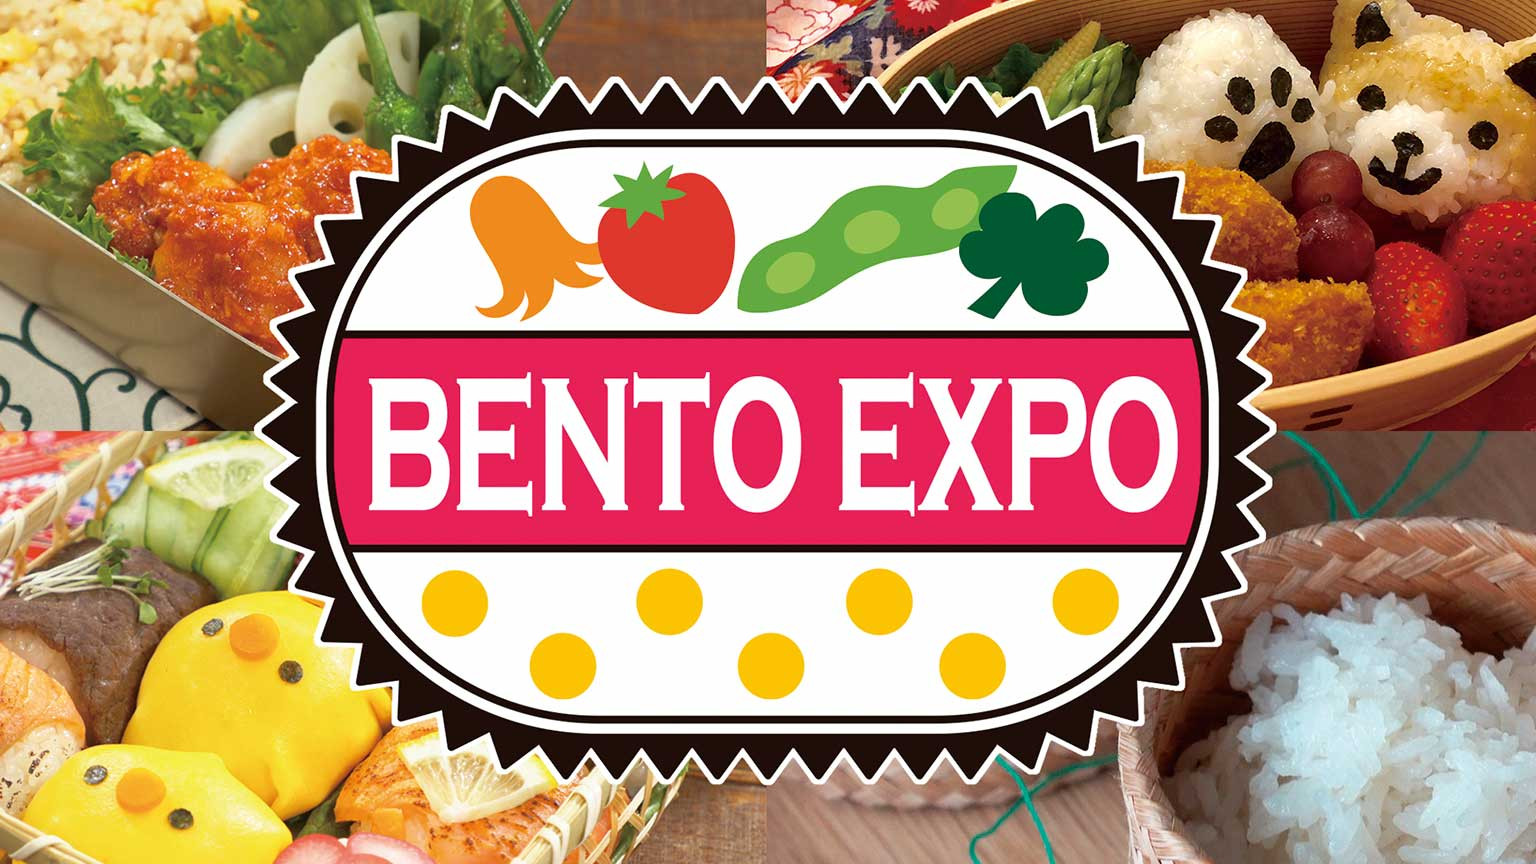 เบ็นโต เอกซ์โป
BENTO EXPO